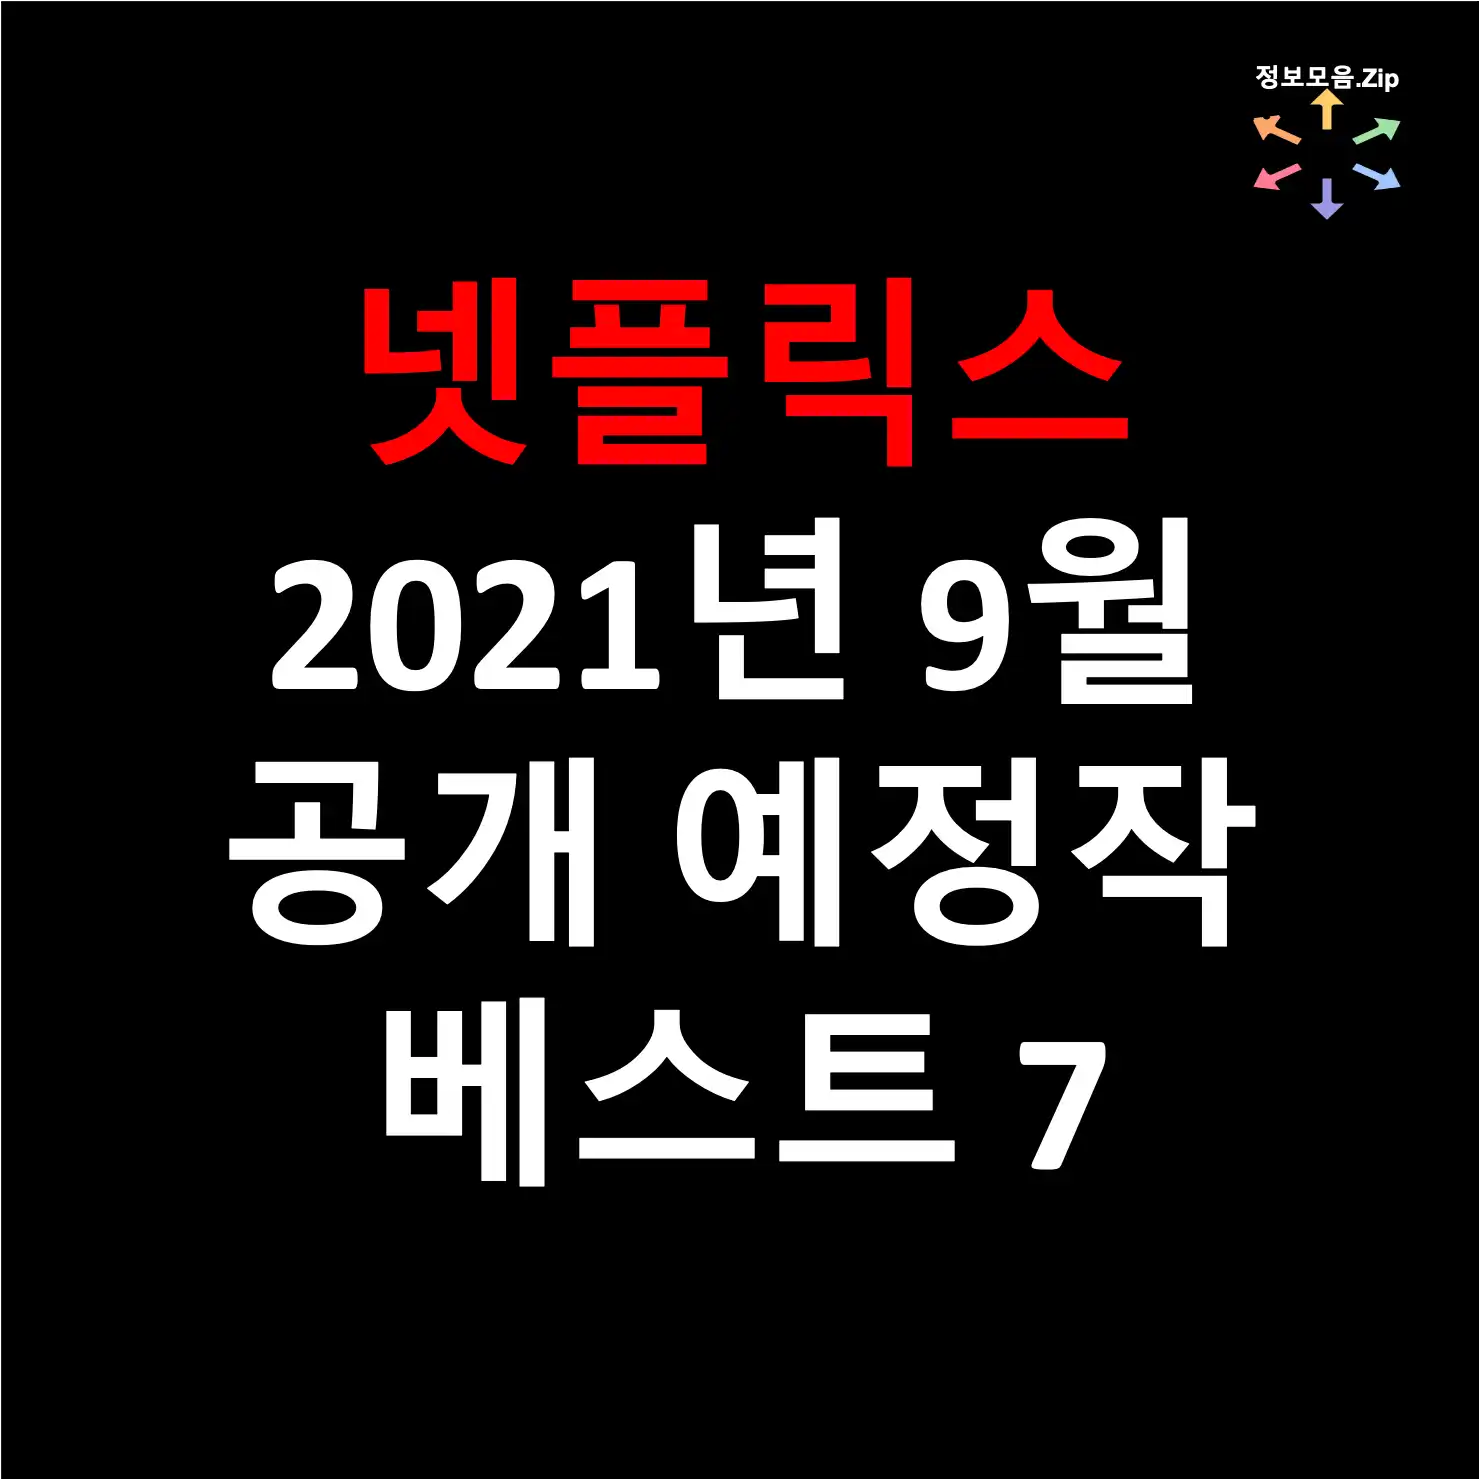 넷플릭스 2021년 9월 공개 예정작 베스트 7